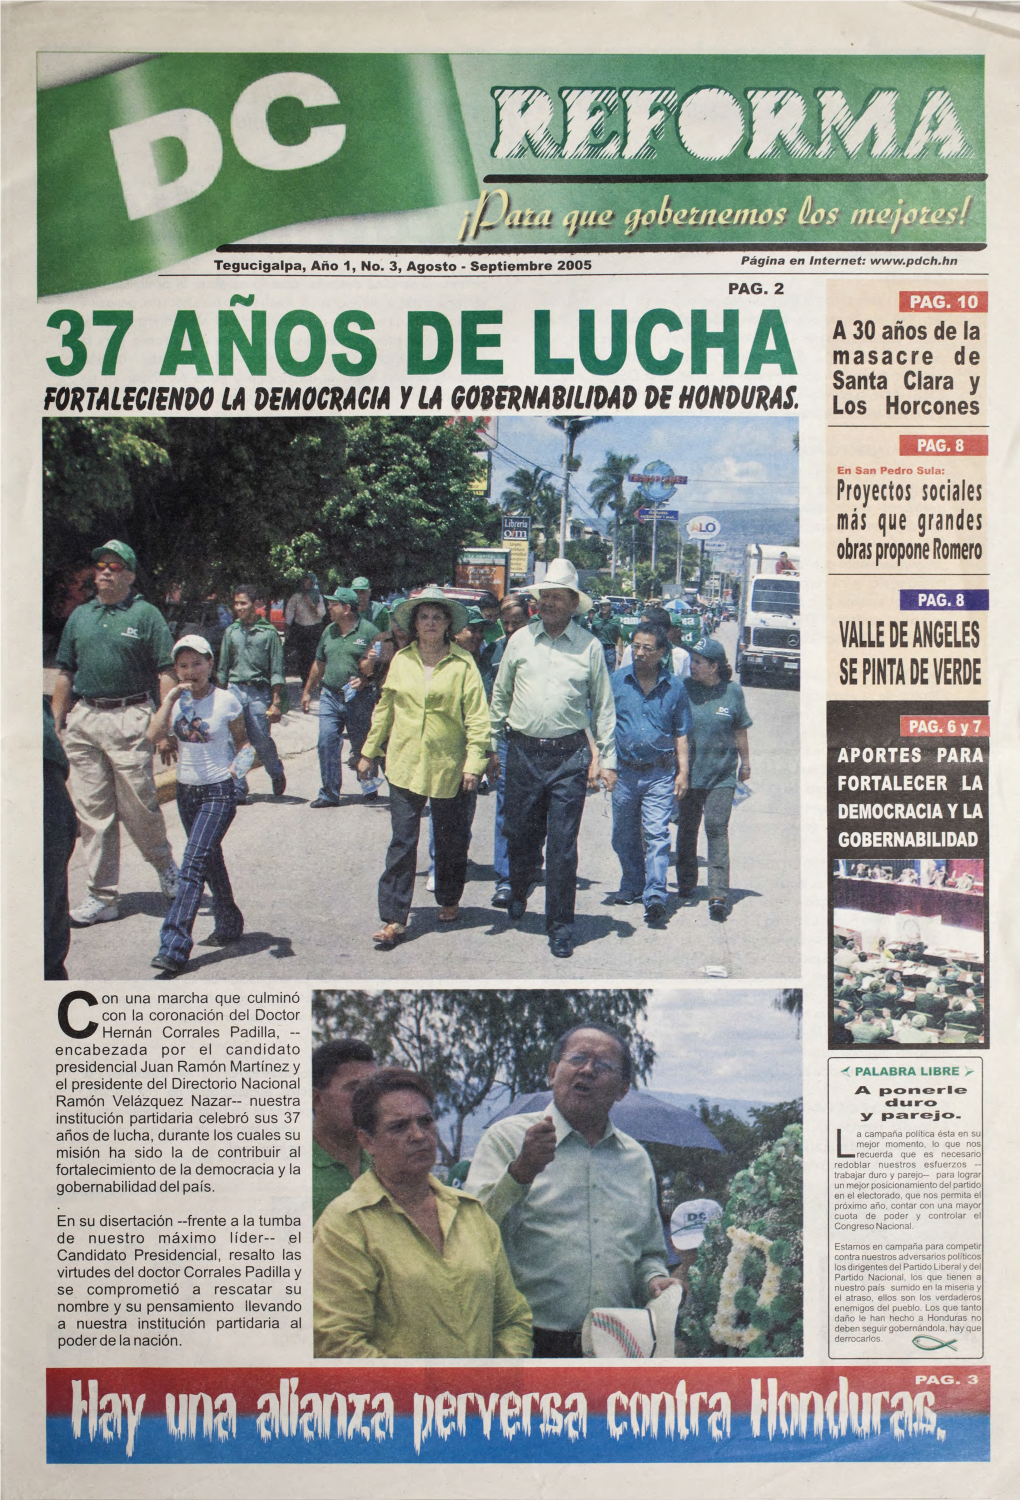 37 ANOS DE LUCHA Santa Clara Y FORTALECIENDO LA DEMOCRACM Y LA GOOERNARIUDAD DE HONDURAS